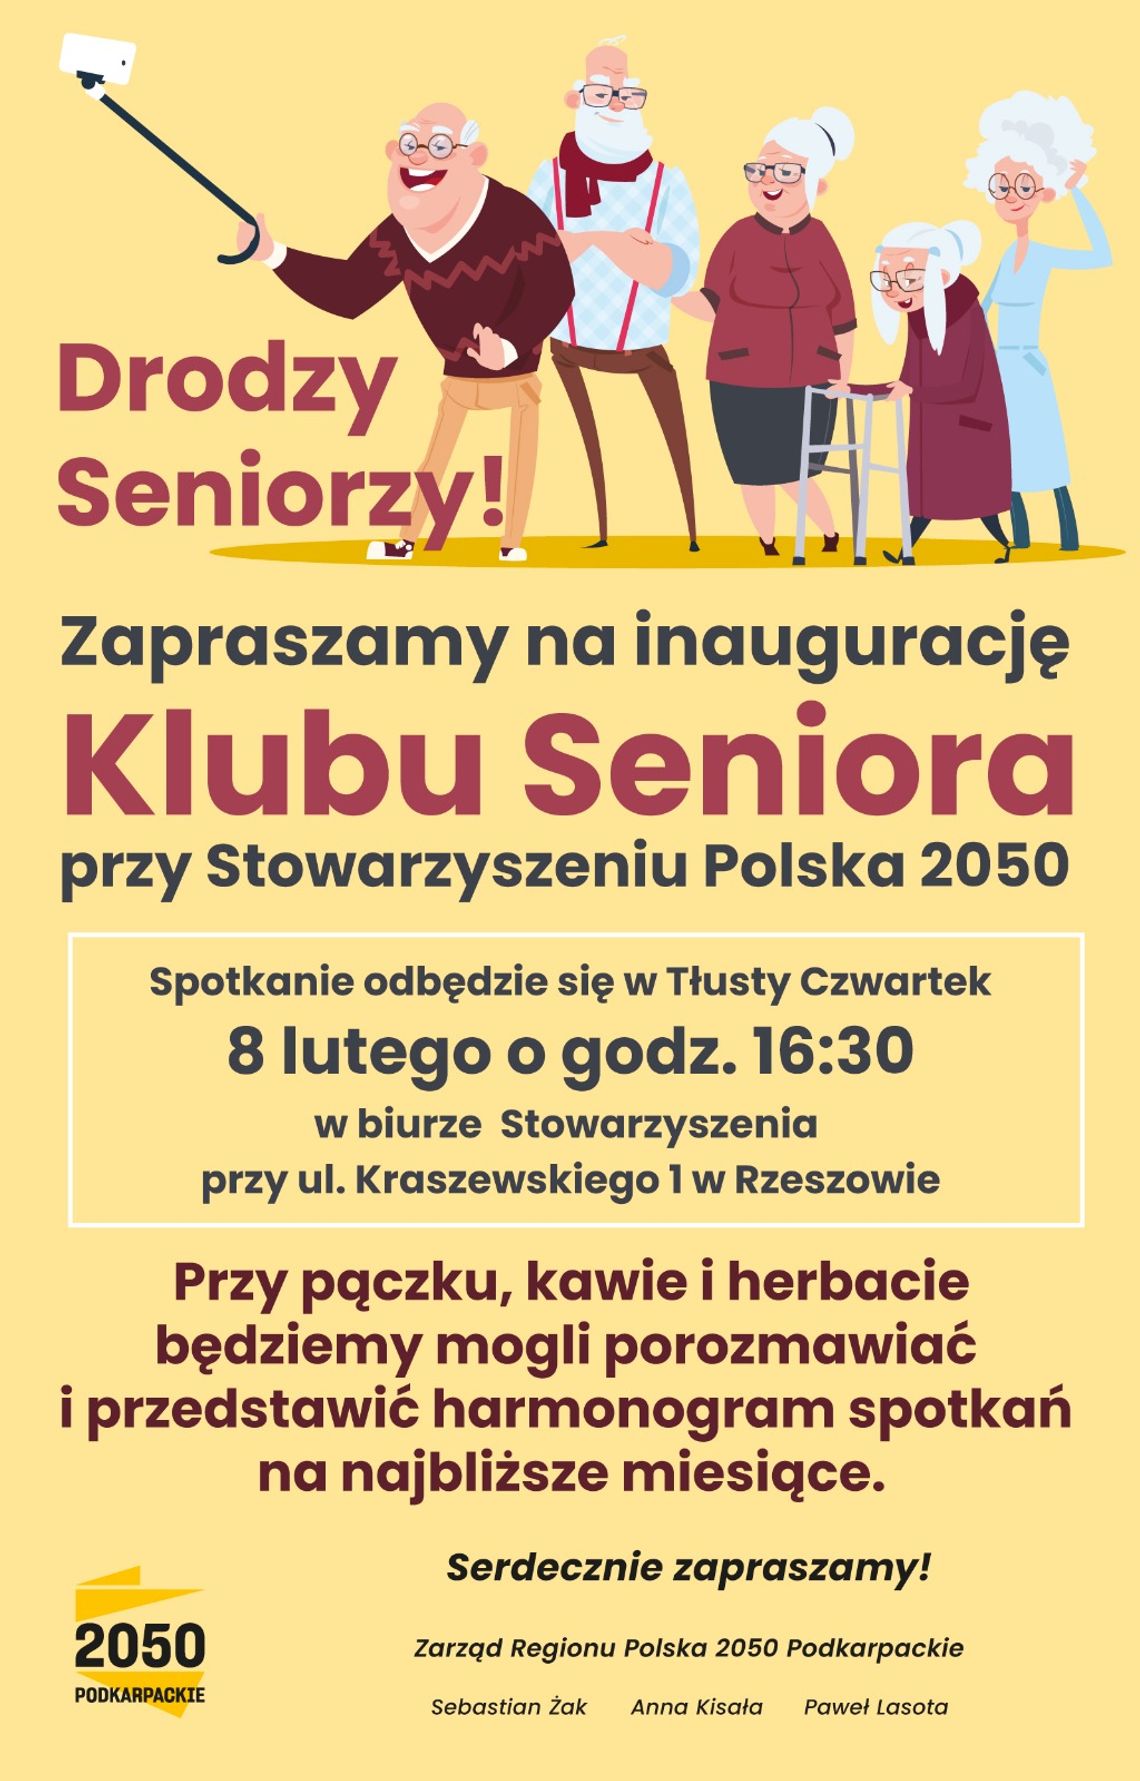 Pierwsze Spotkanie Seniorów: Nowa inicjatywa w Rzeszowie dla Seniorów